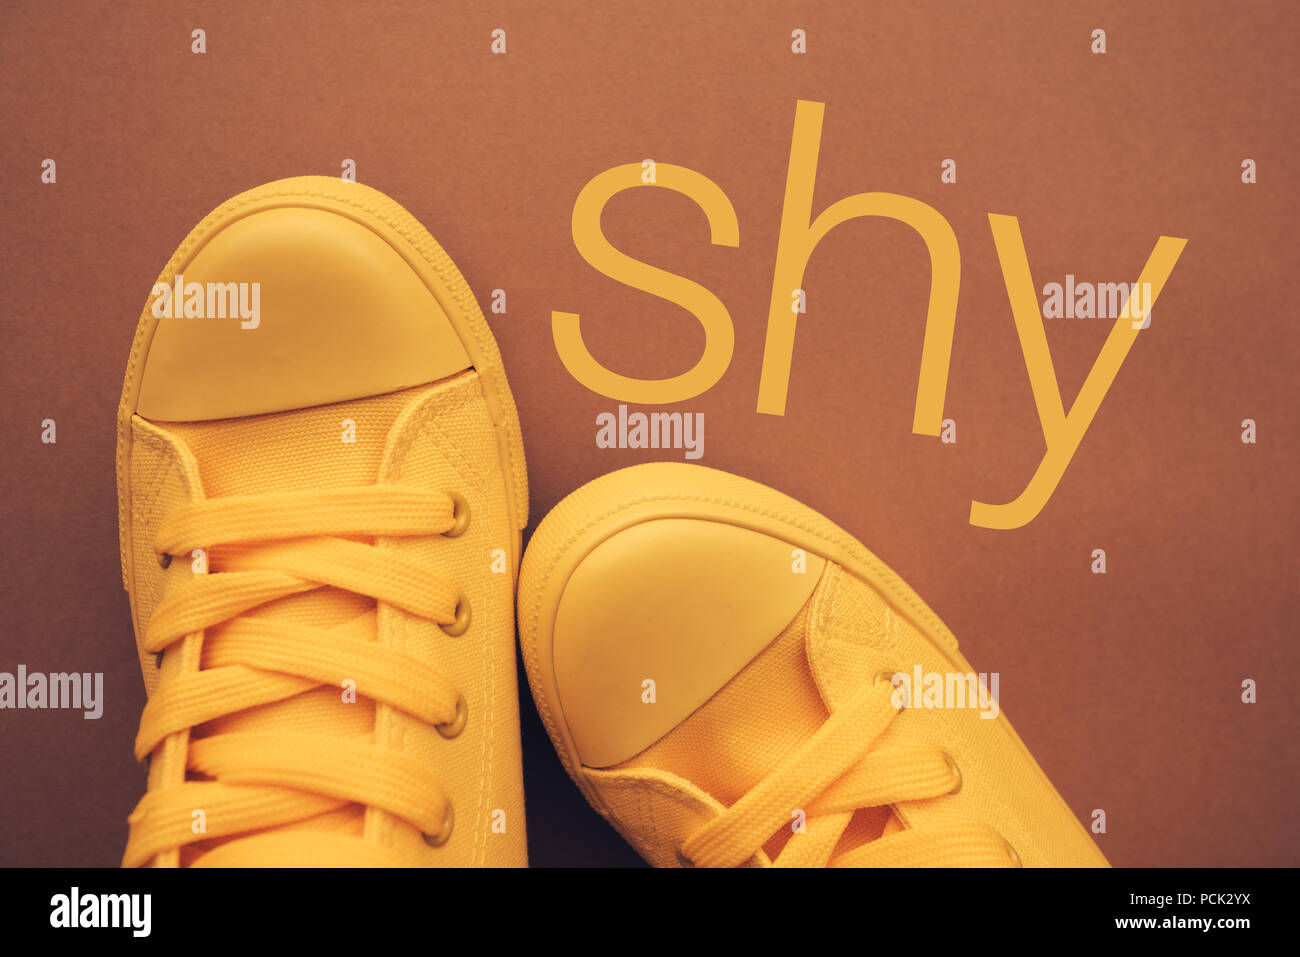 Personne timide et timidité, conceptual image avec sneakers jaune d'en haut Banque D'Images